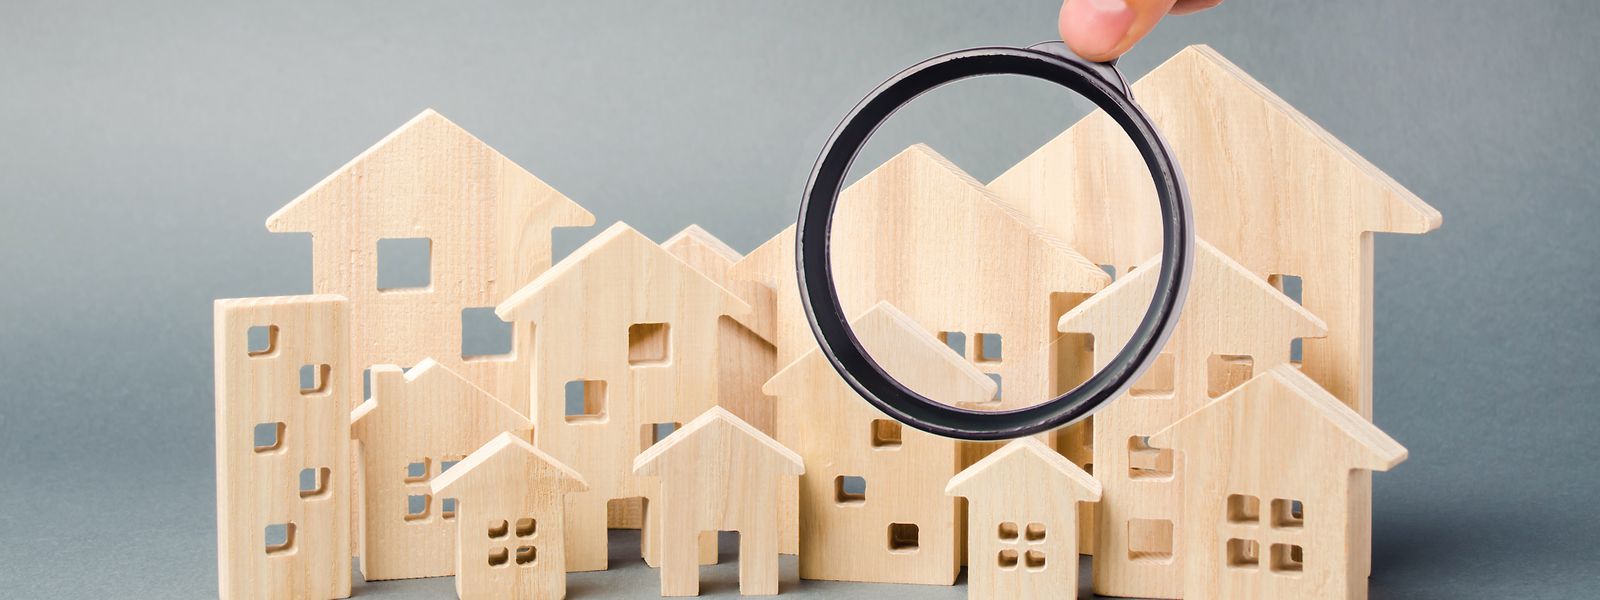 Há mais casas à venda e menos compradores no país, devido à subida das taxas de juro e dificuldades em obter crédito imobiliário.